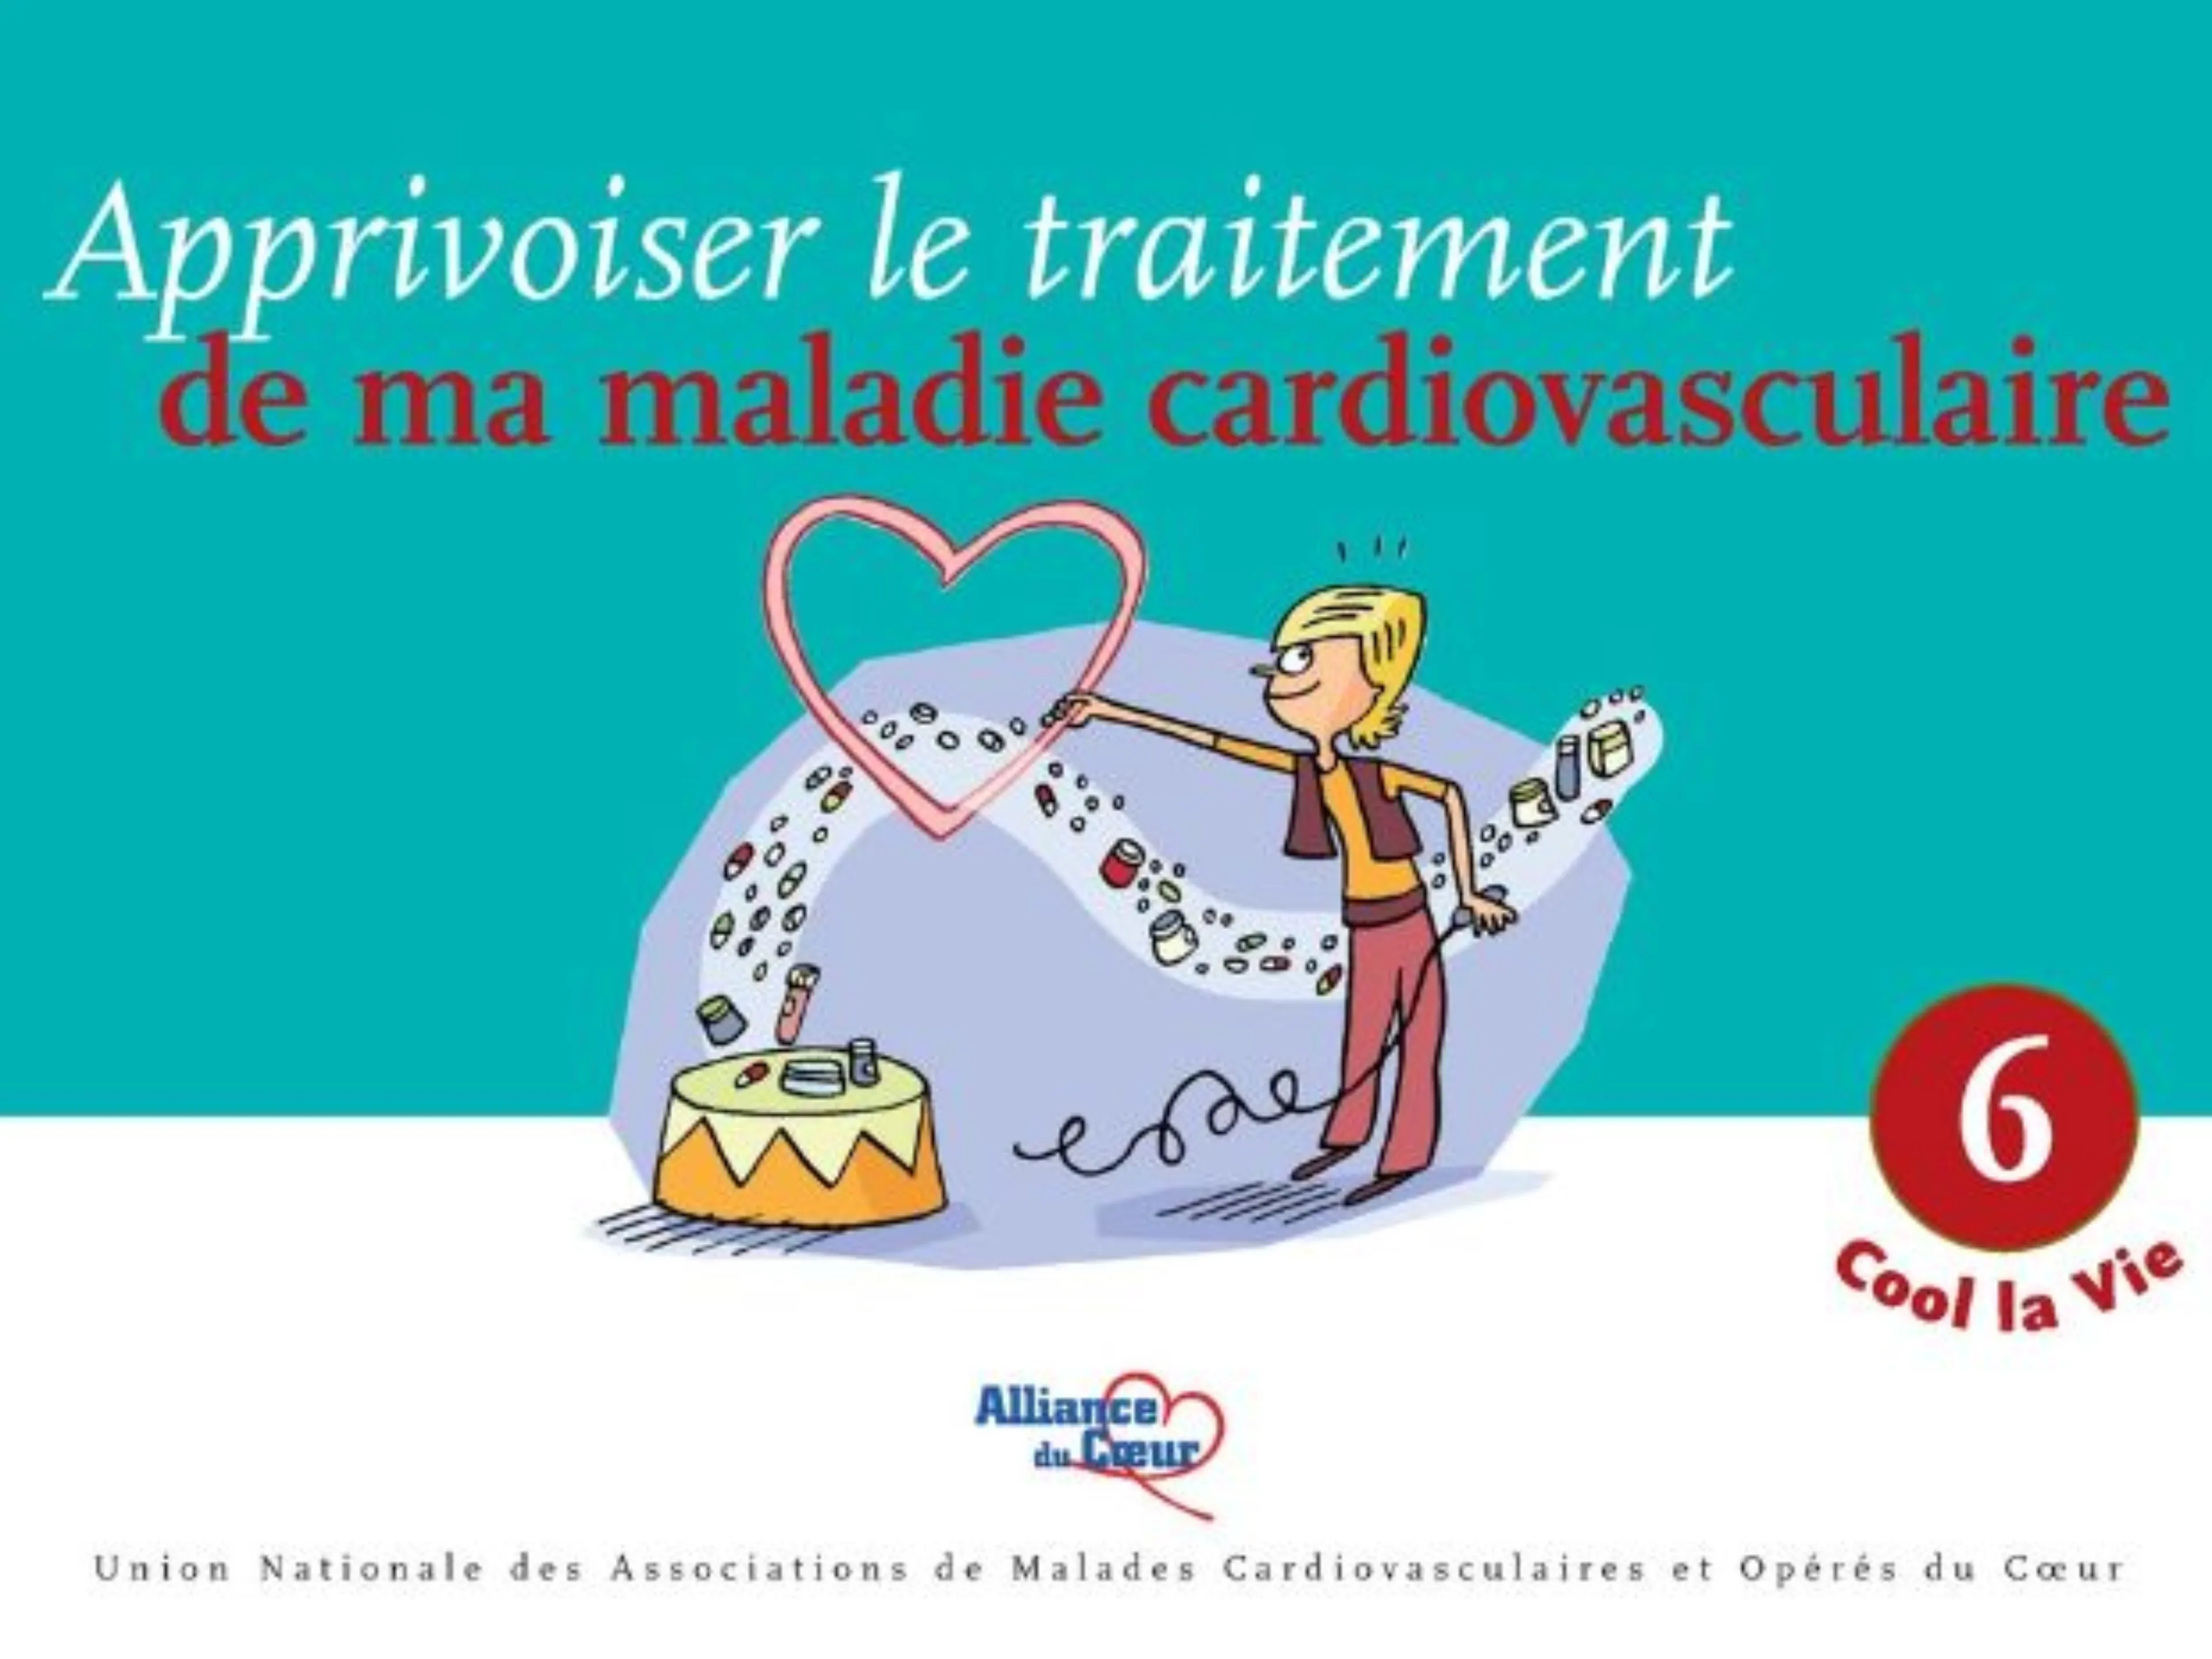 Brochure patient apprivoiser le traitement de ma maladie cardiovasculaire